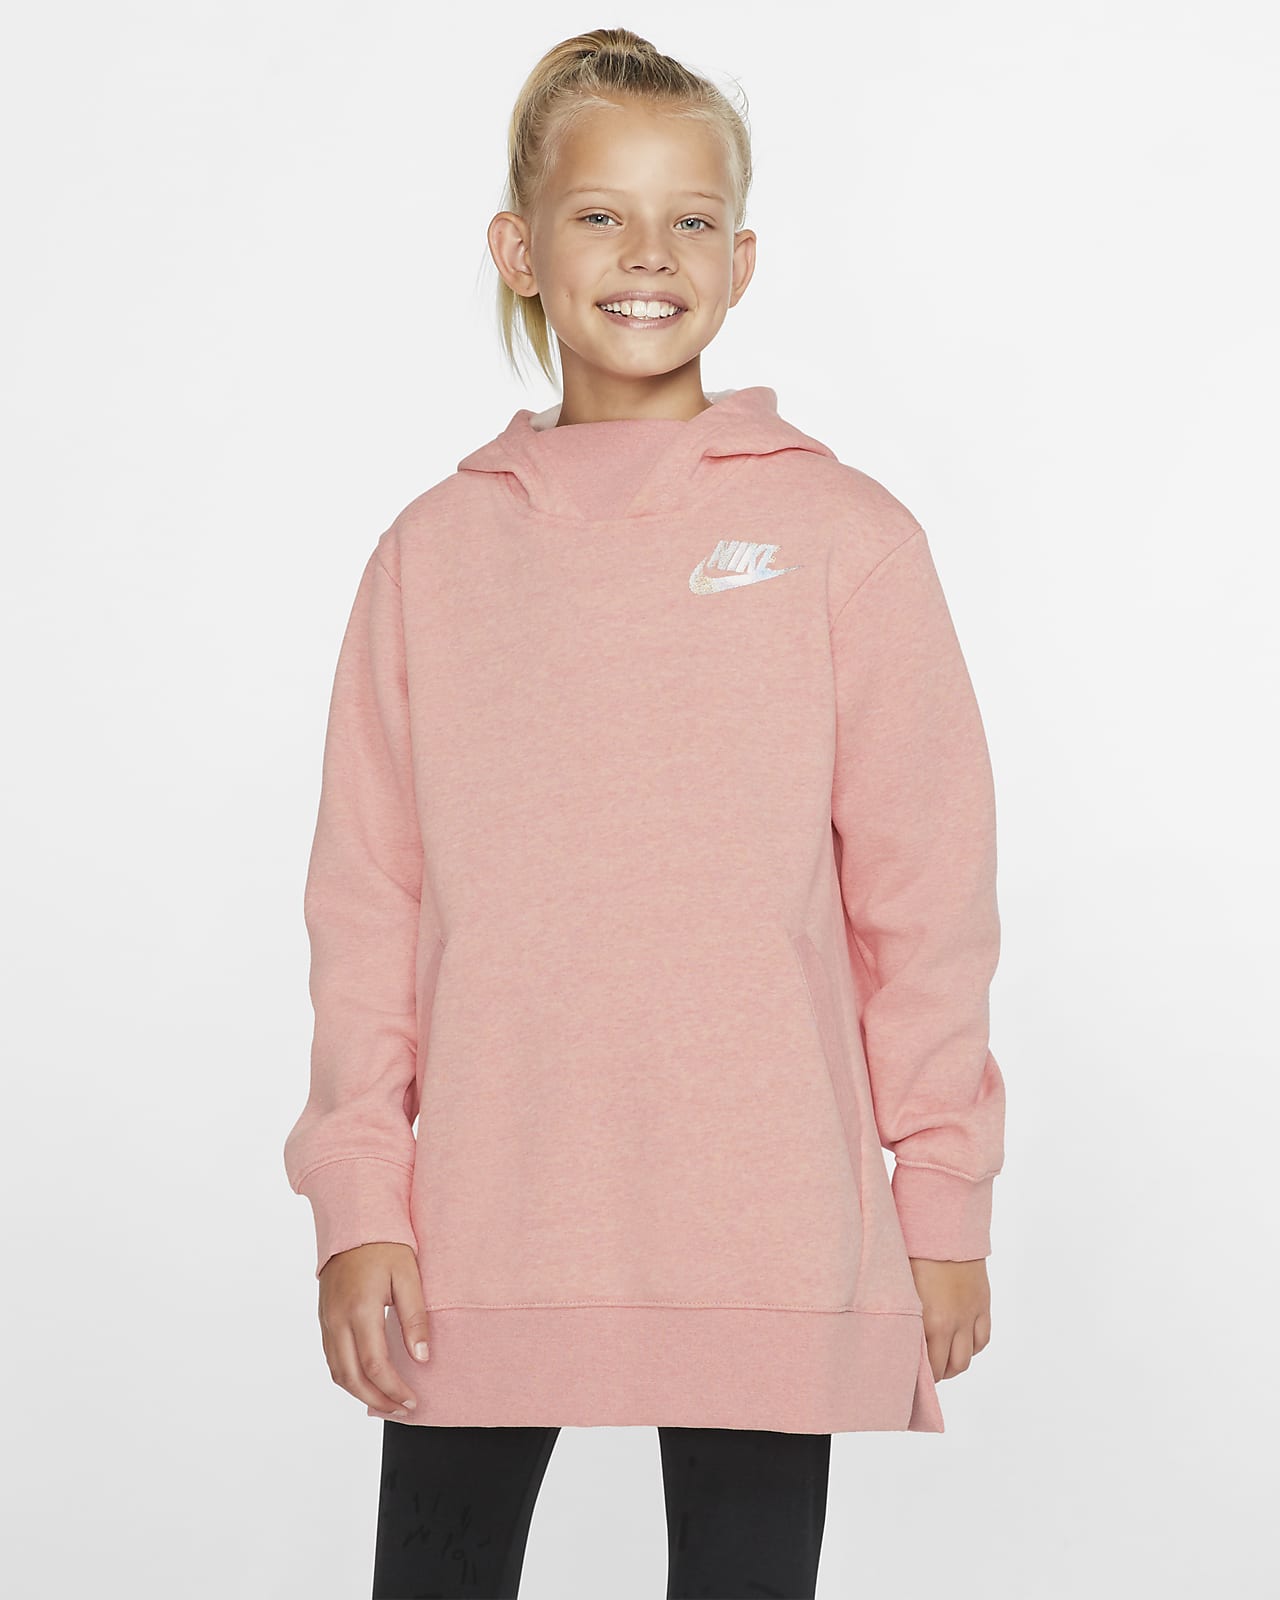 Nike Sportswear Older Kids' (Girls') Fleece Top. Nike HR